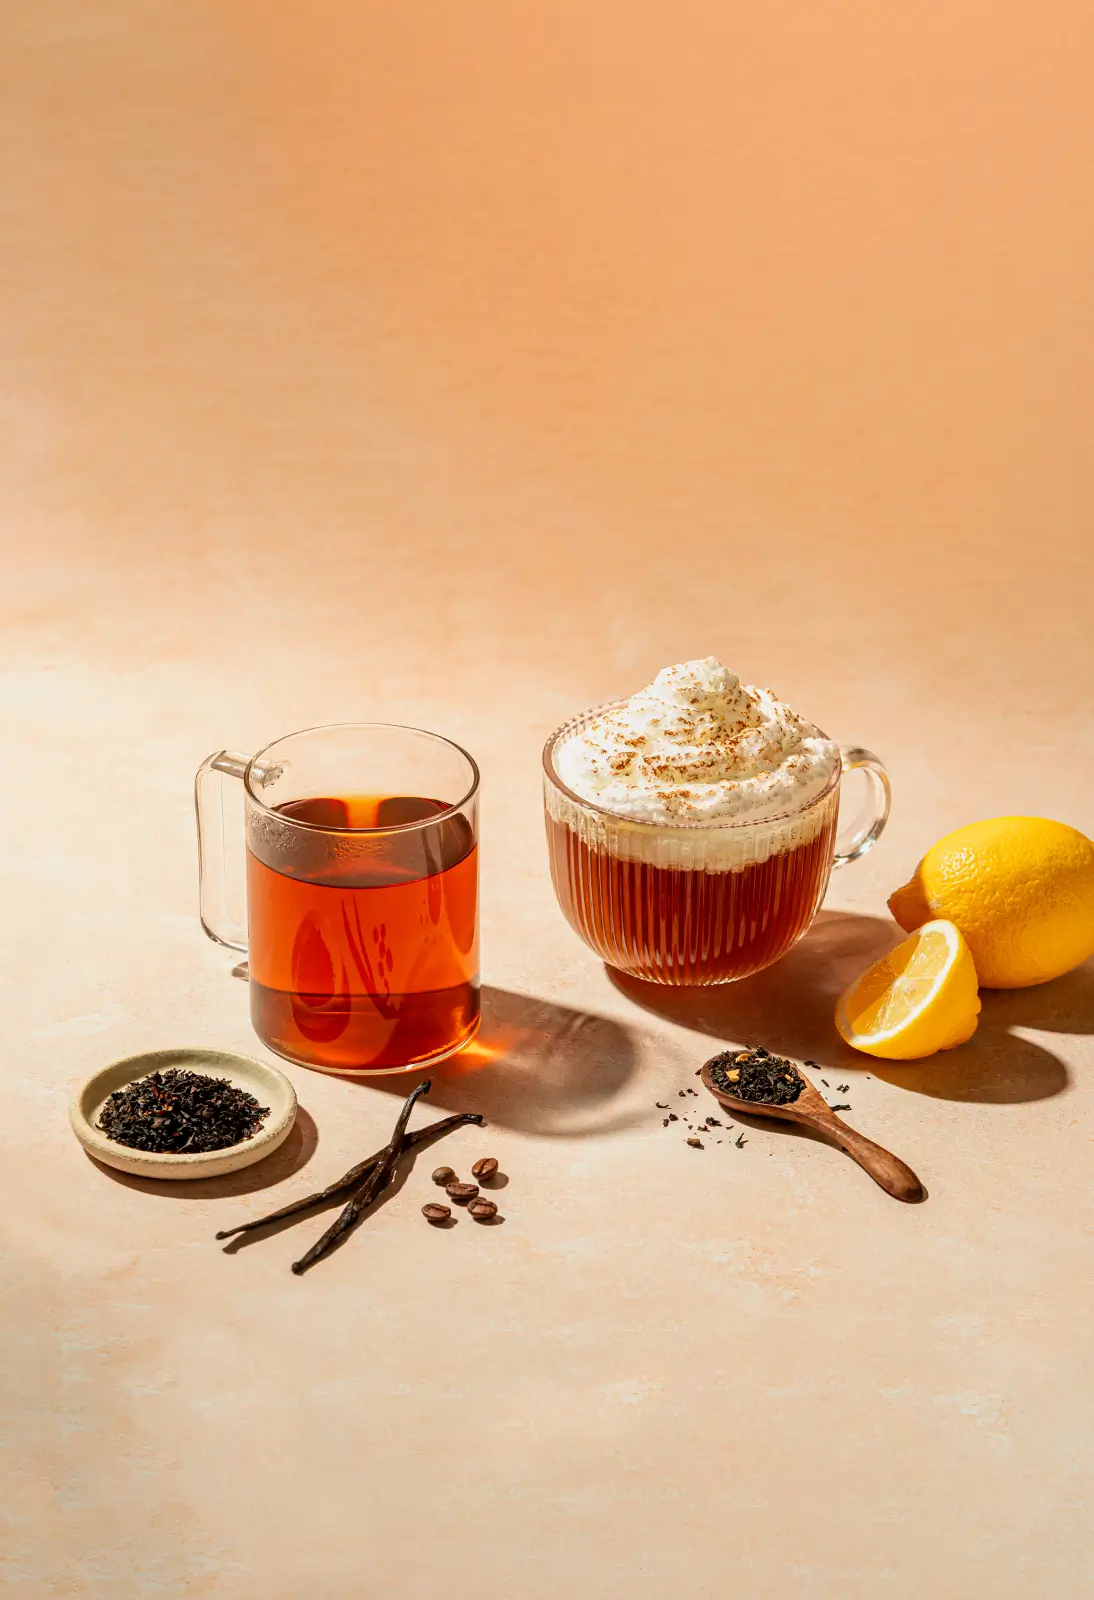 Klicken Sie auf "Jetzt entdecken", um unsere Gourmet-Tees zu entdecken